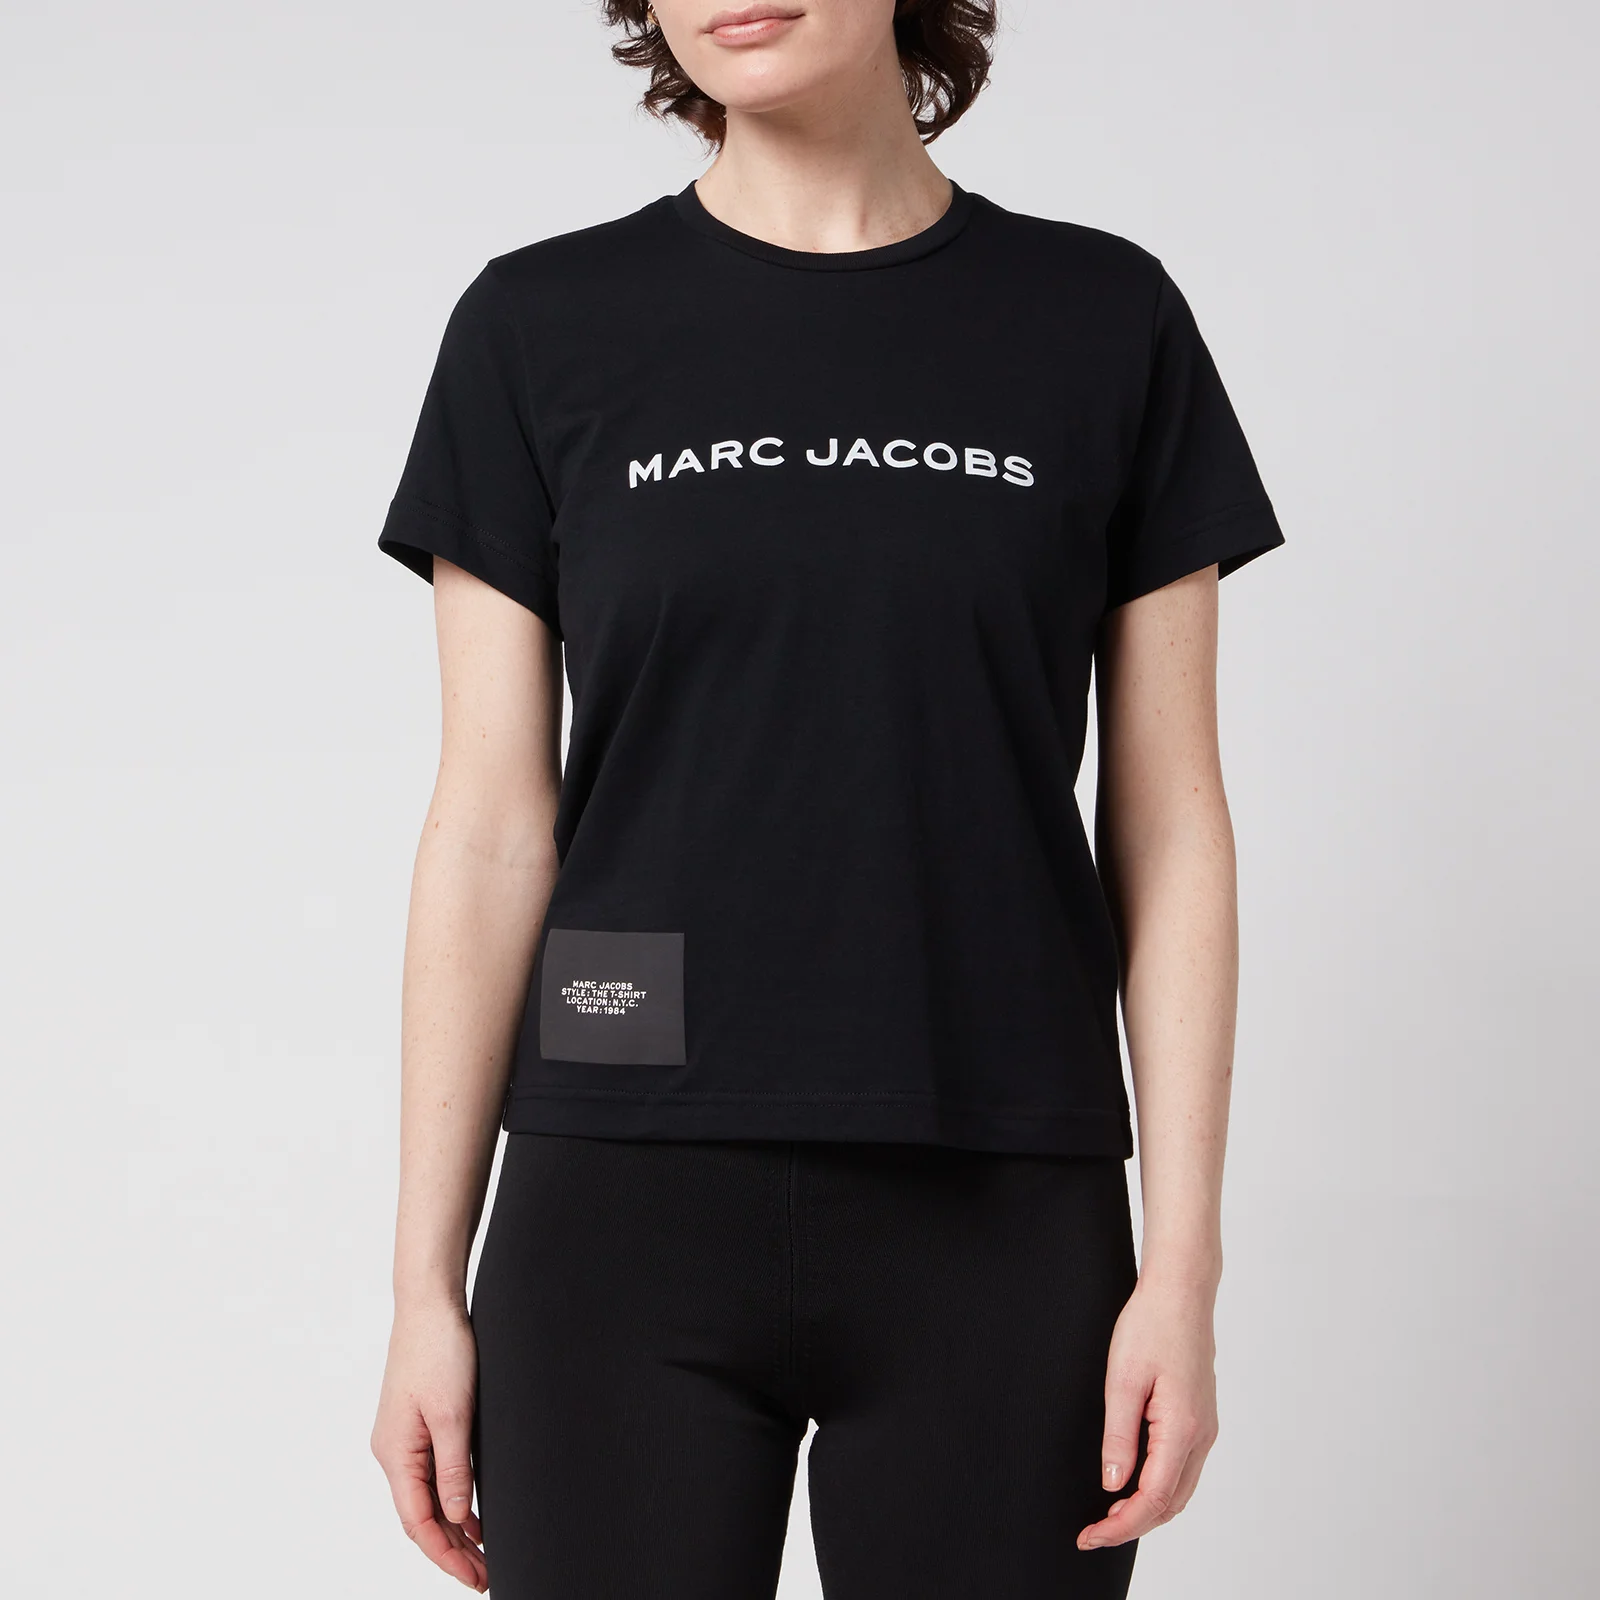 Marc Jacobs Women's The T-Shirt - Black Image 1